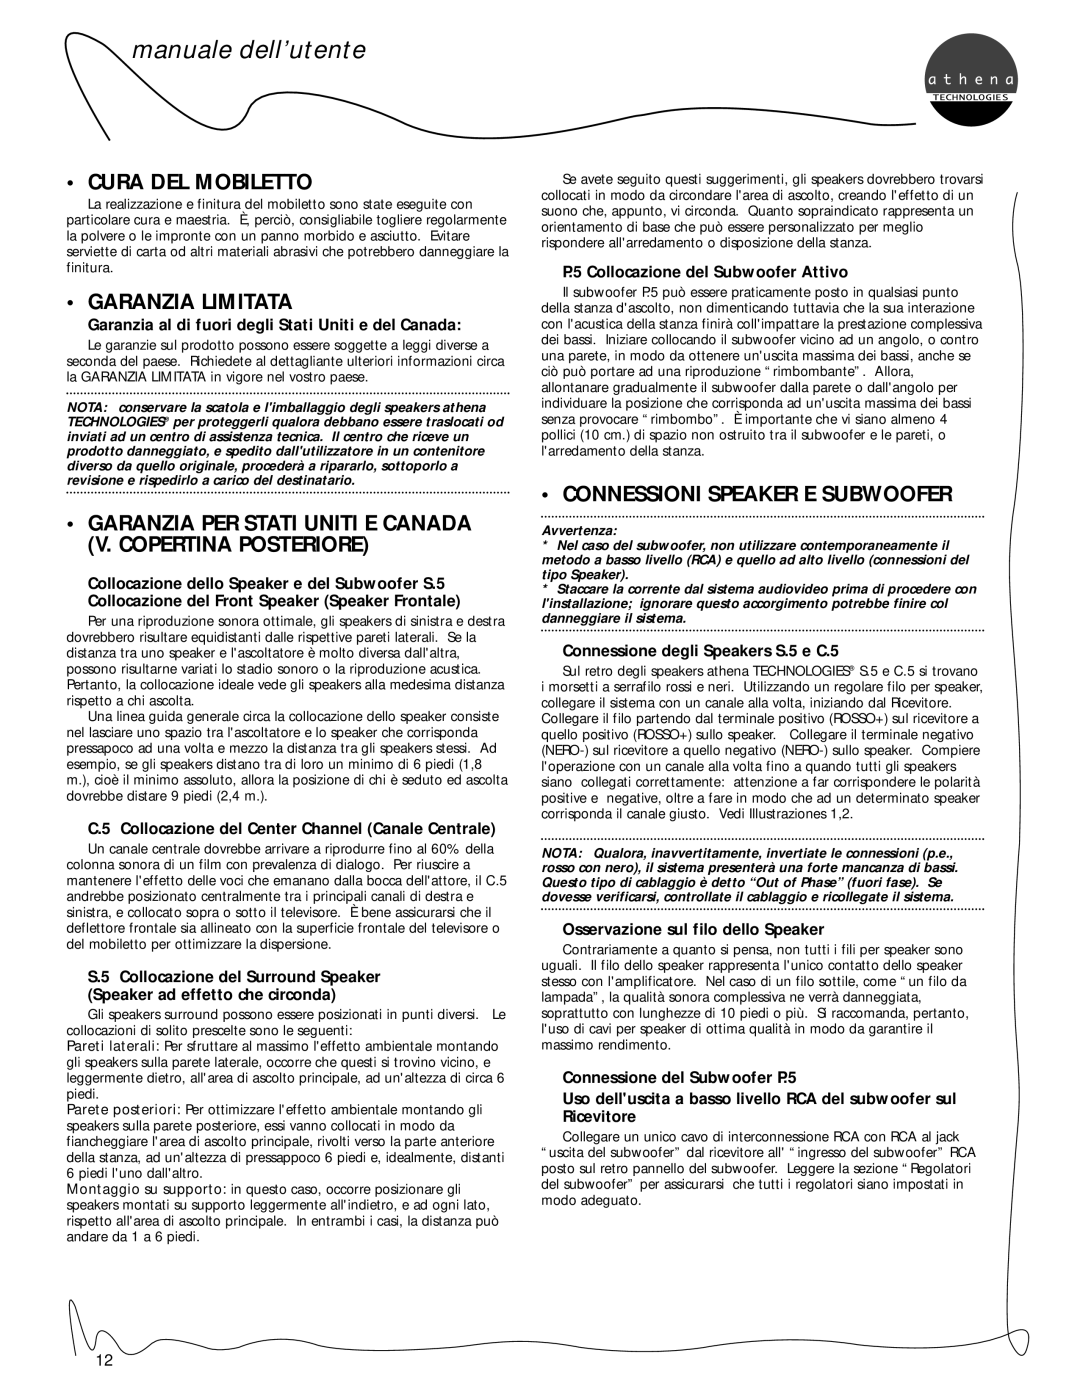 Athena Technologies C.5, S.5 Cura Del Mobiletto, Garanzia Limitata, Connessioni Speaker E Subwoofer, manuale dell’utente 